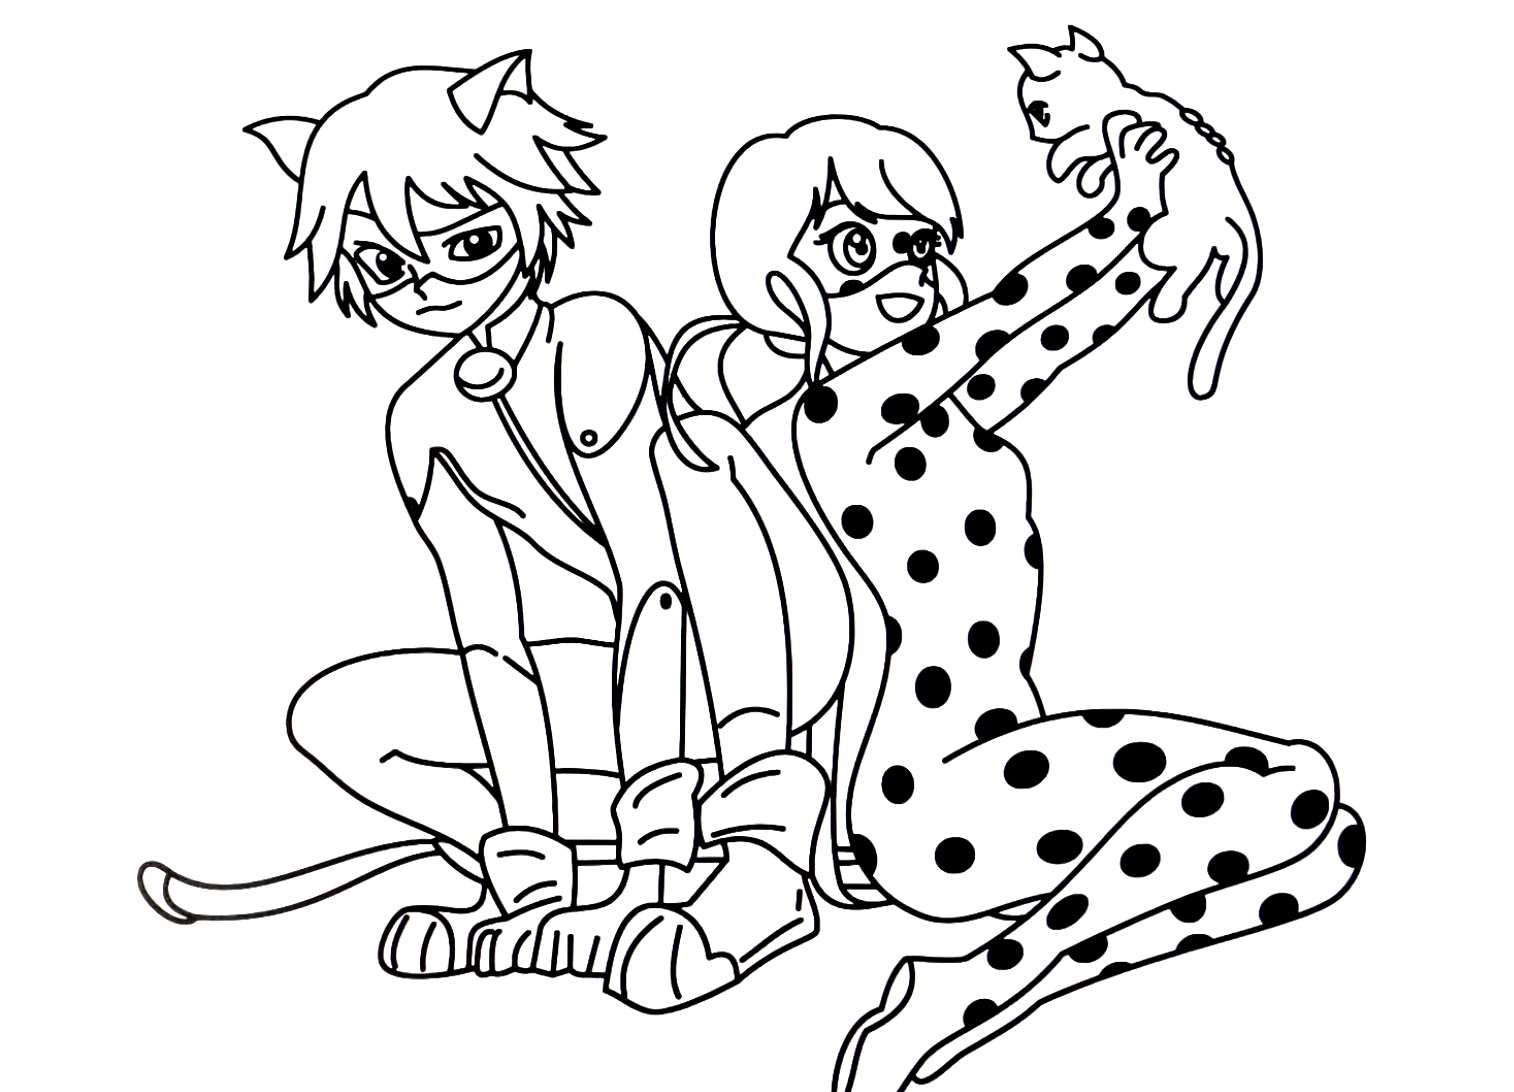 Dibujos para colorear Ladybug y Cat Noir para imprimir y descargar